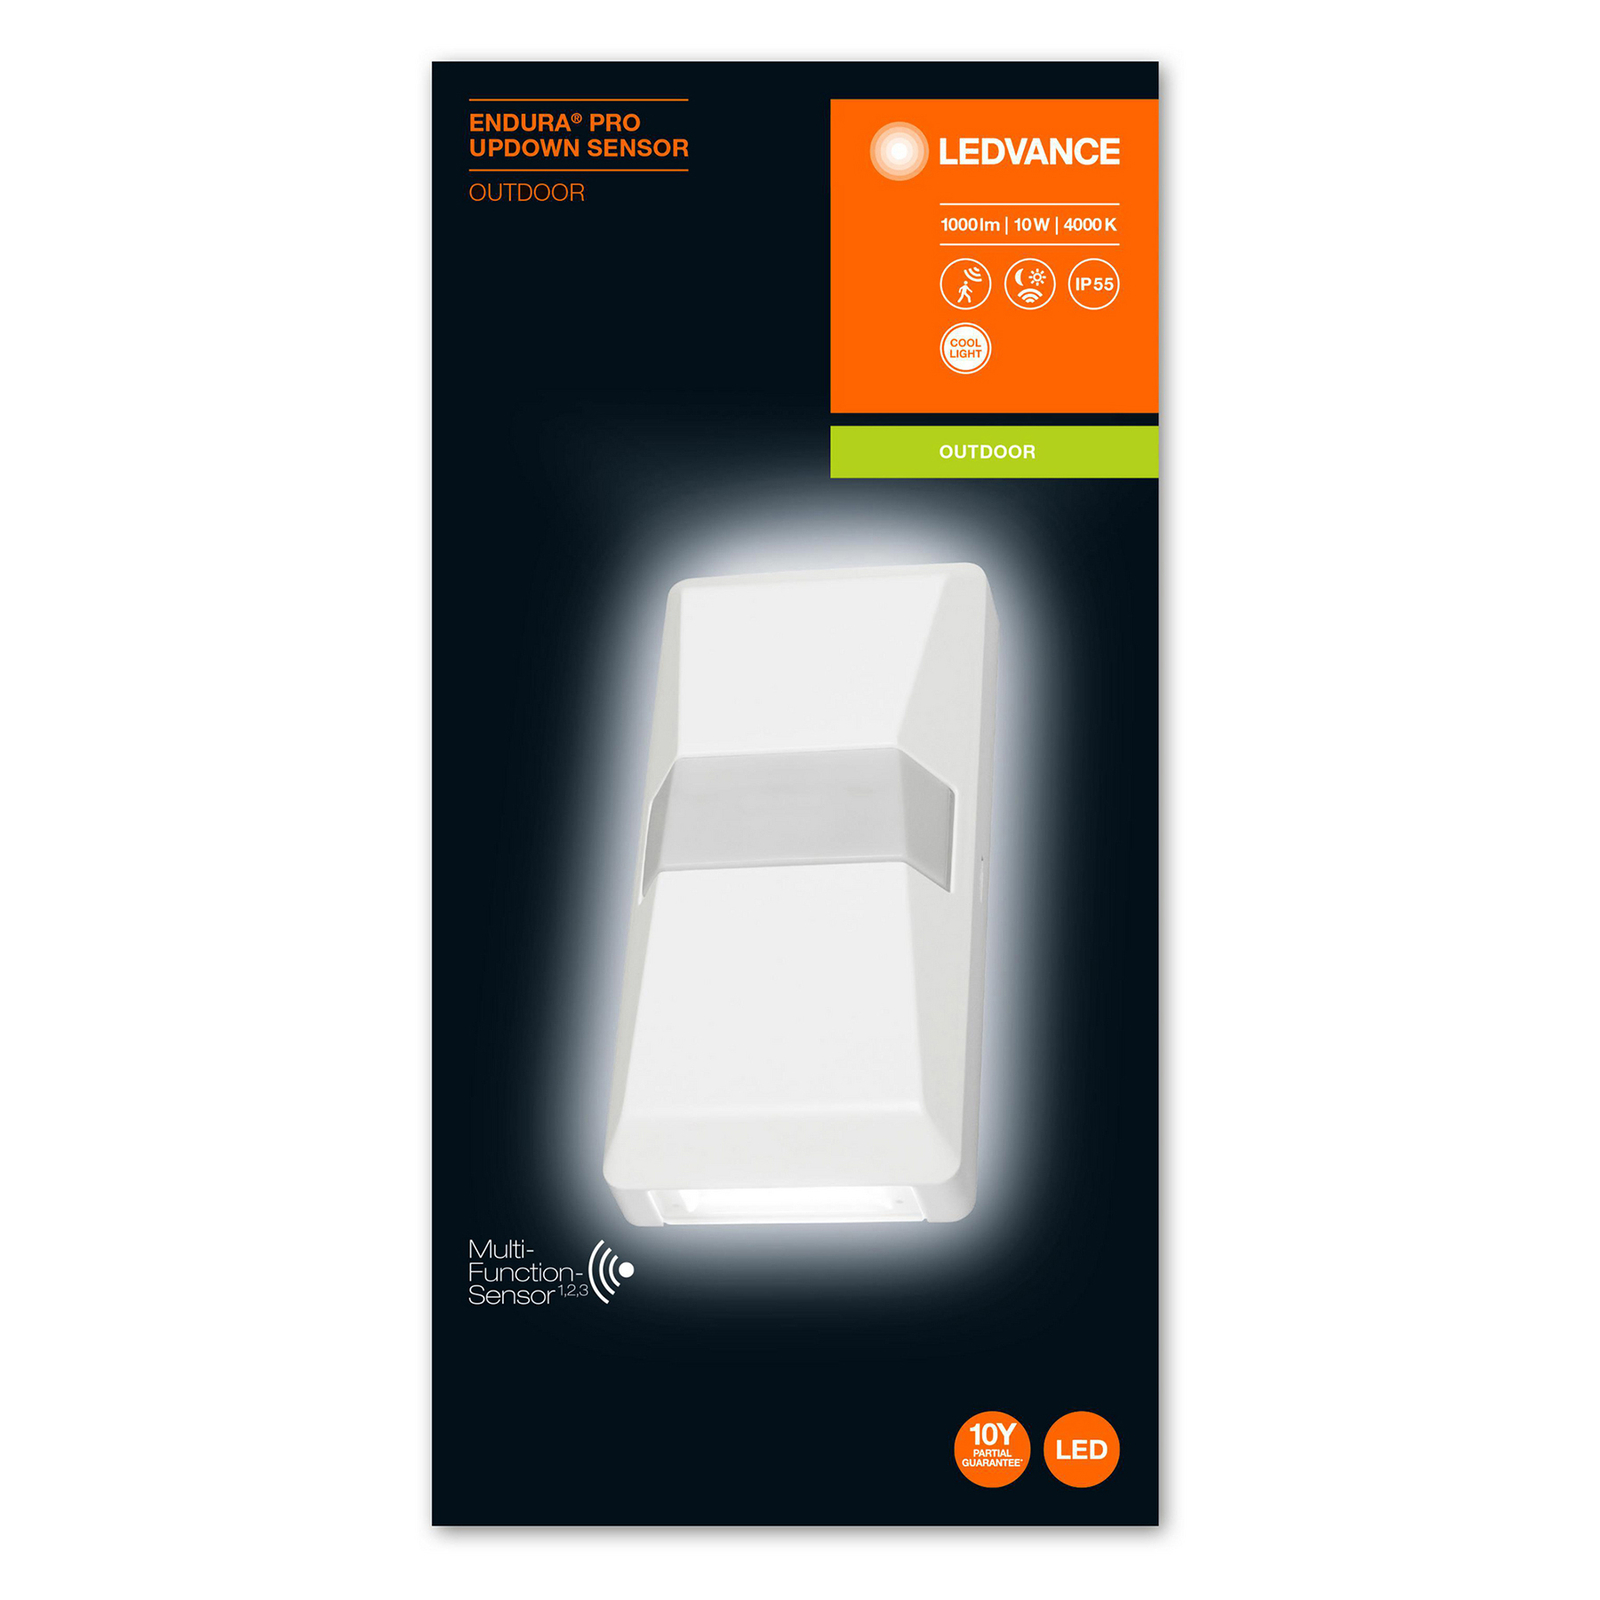 LEDVANCE Endura Pro UpDown Sensor blanc